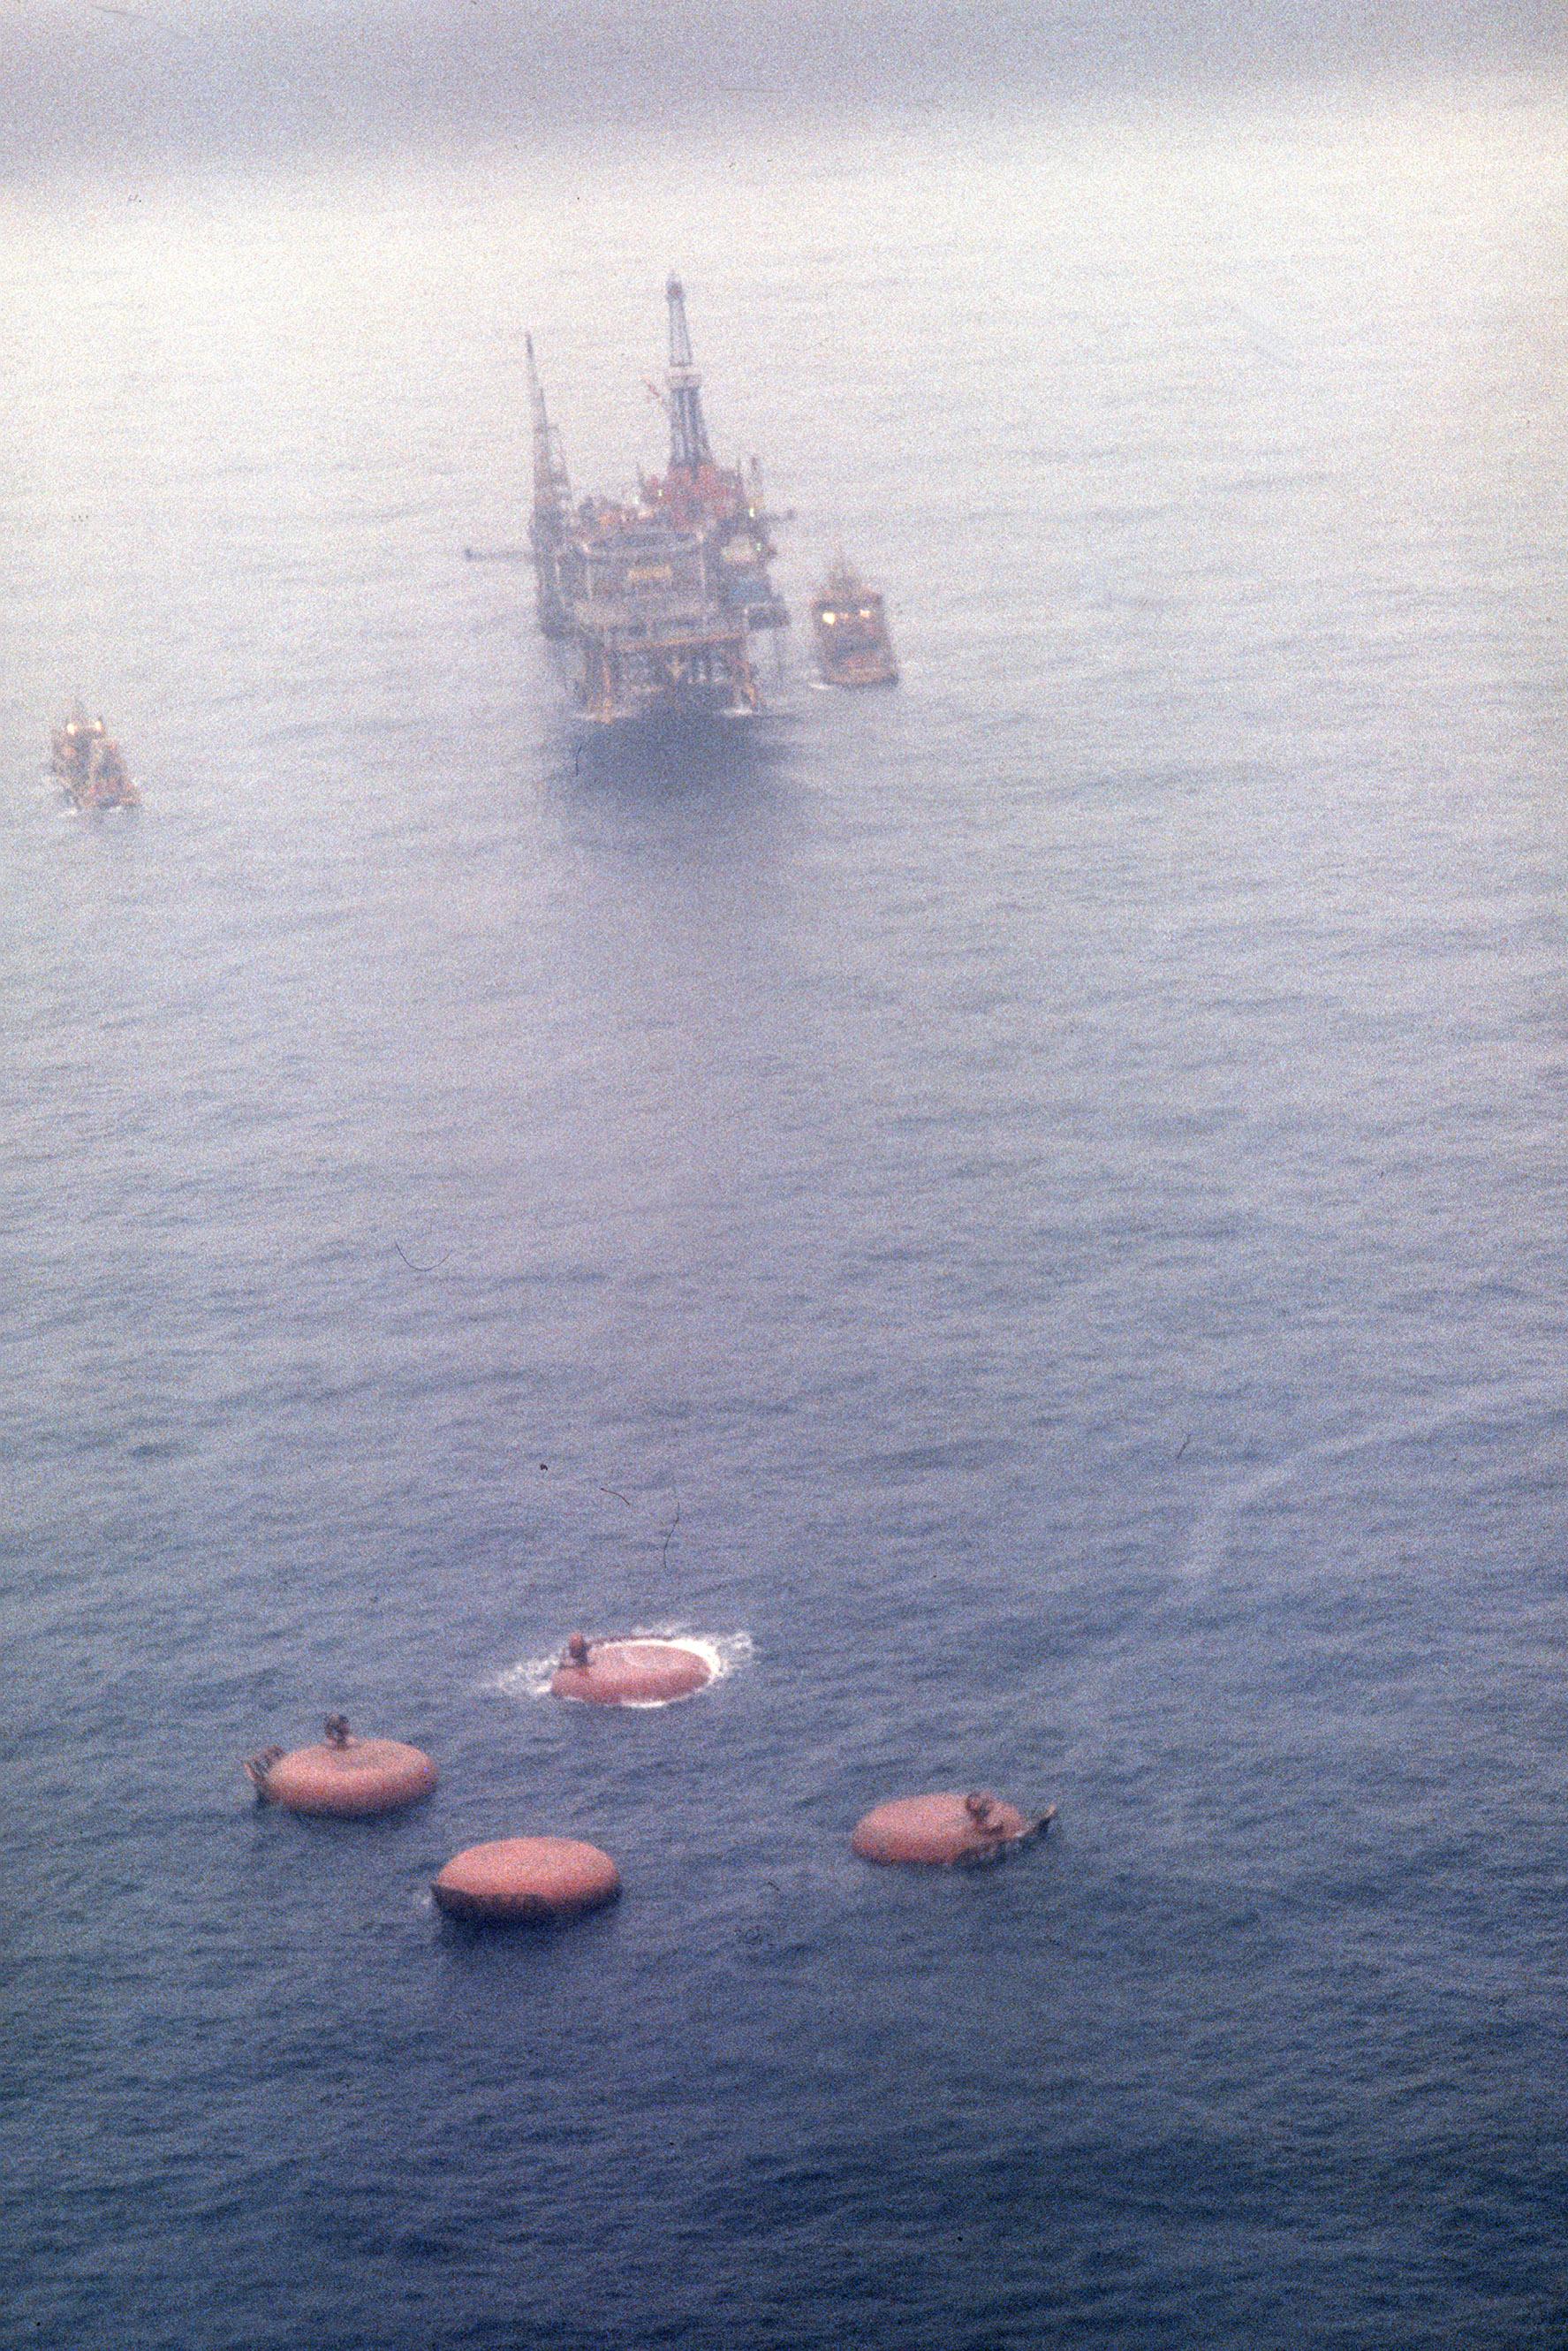 De fyra benen på oljeplattformen Alexander Kielland, som vält upp och ner, sticker upp ur vattnet efter katastrofen. 